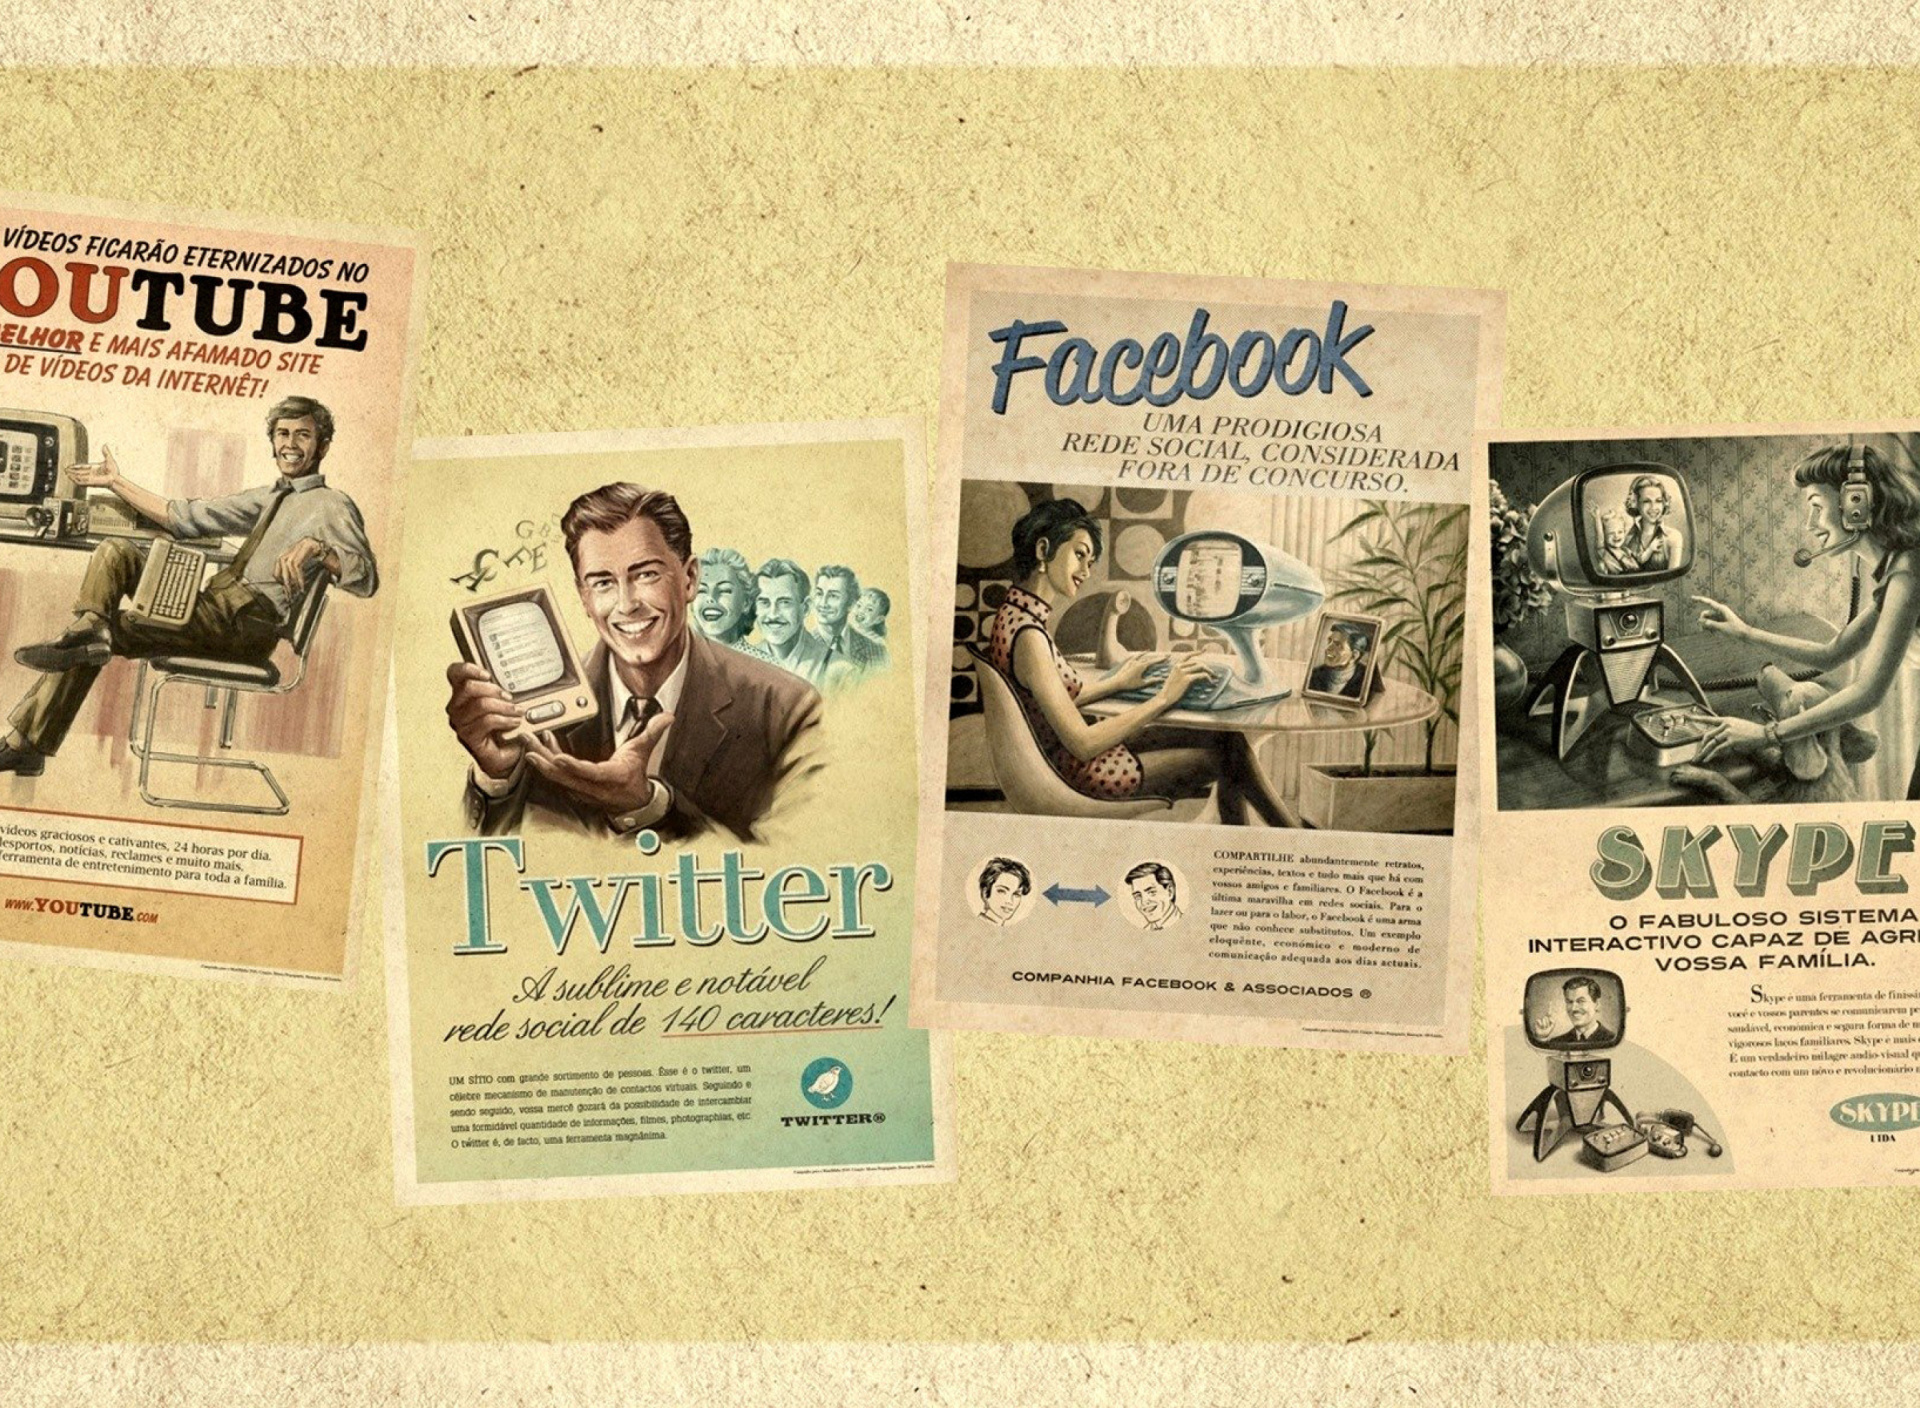 Das Social Networks Advertising: Skype, Twitter, Youtube Wallpaper 1920x1408